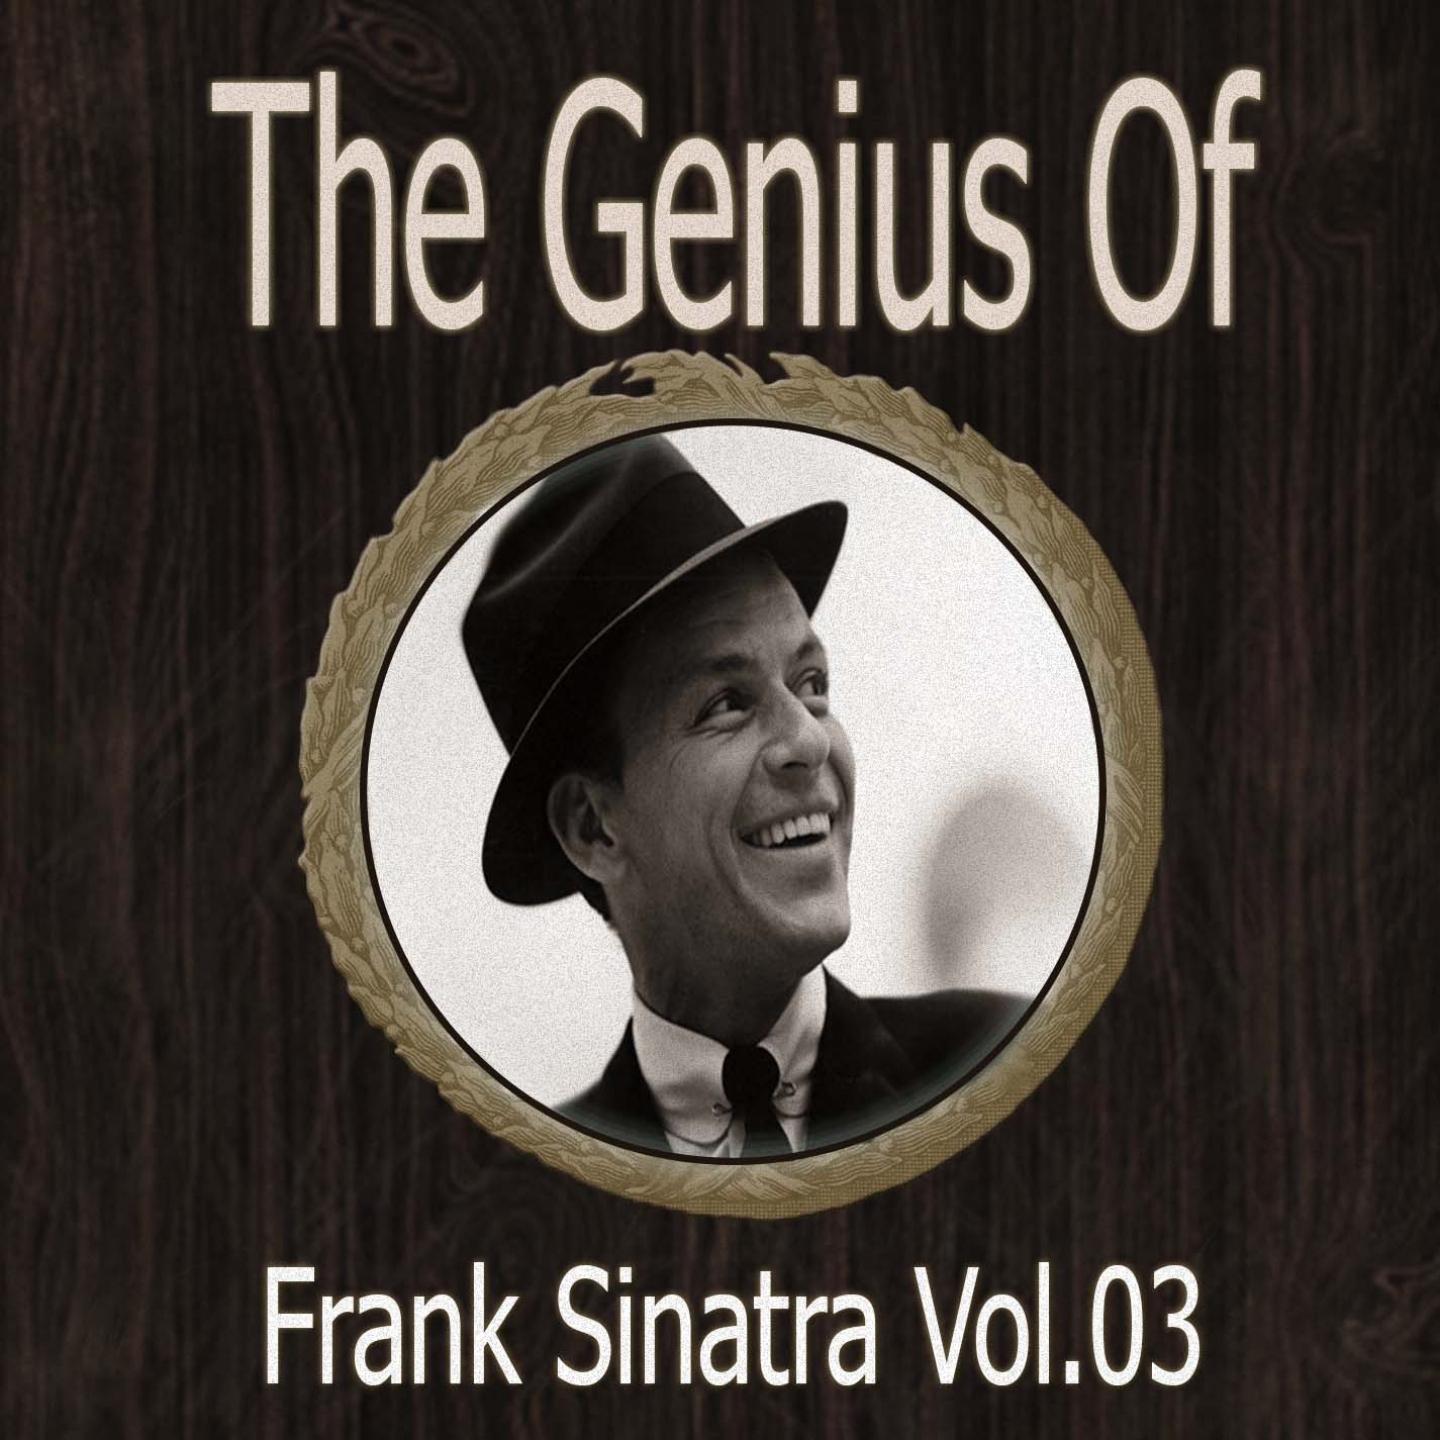 The Genius of Frank Sinatra Vol 03